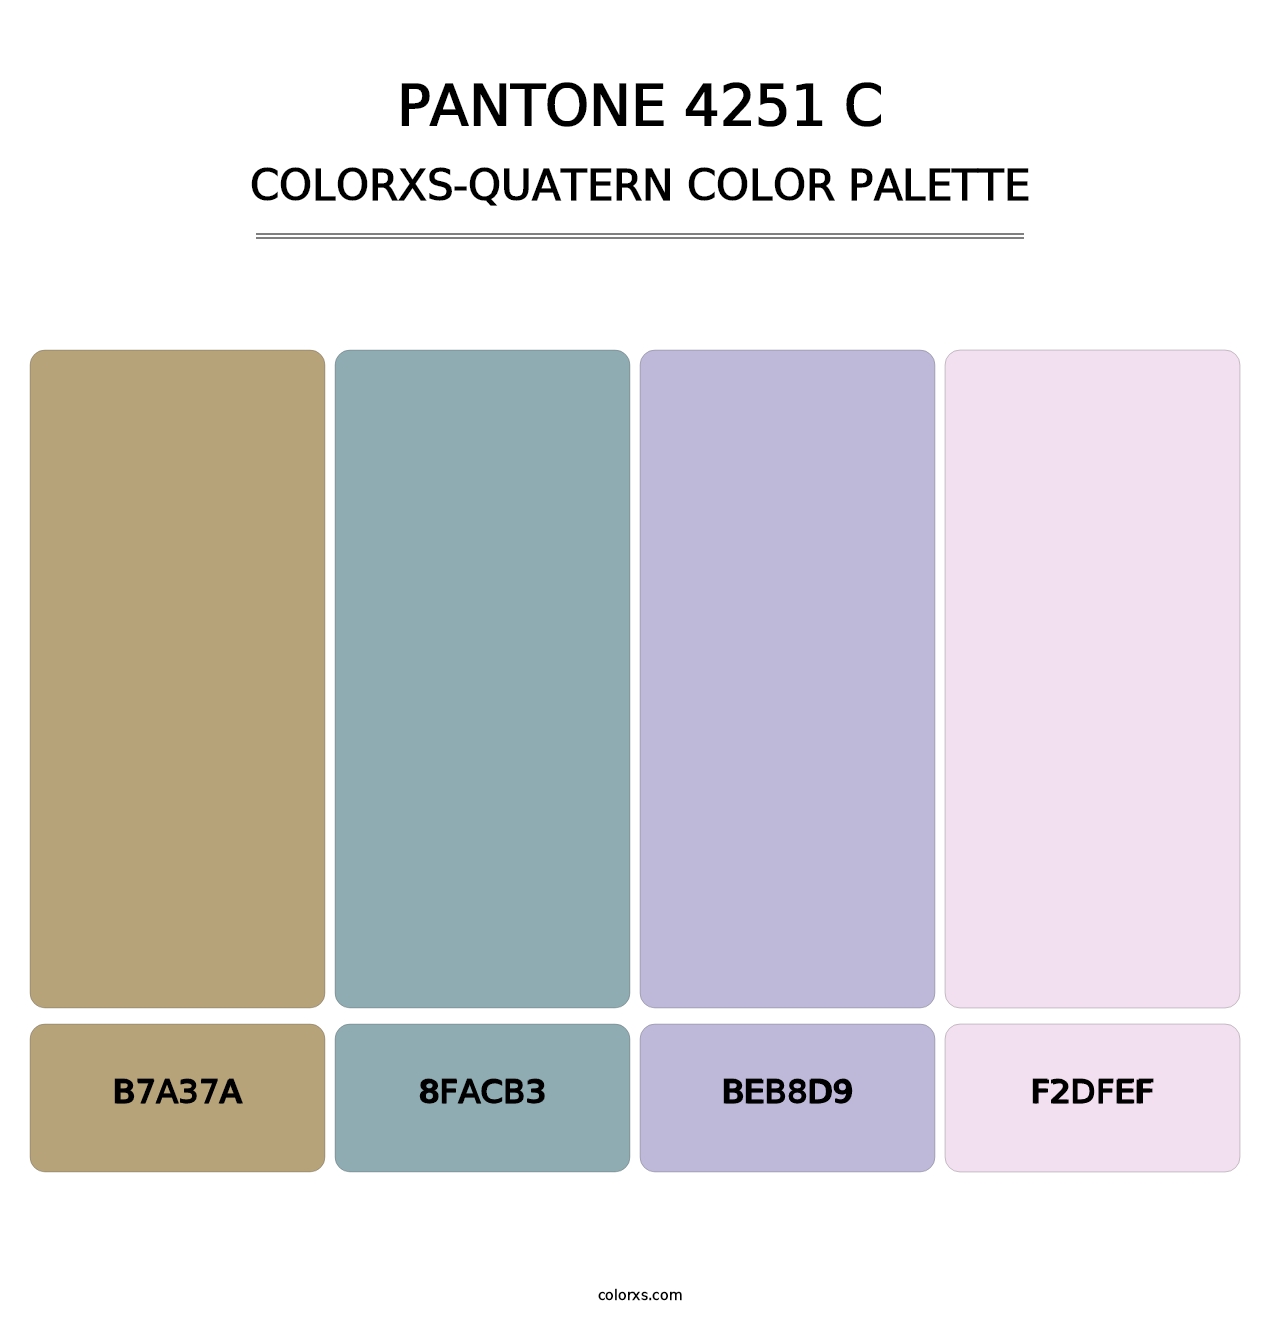 PANTONE 4251 C - Colorxs Quatern Palette